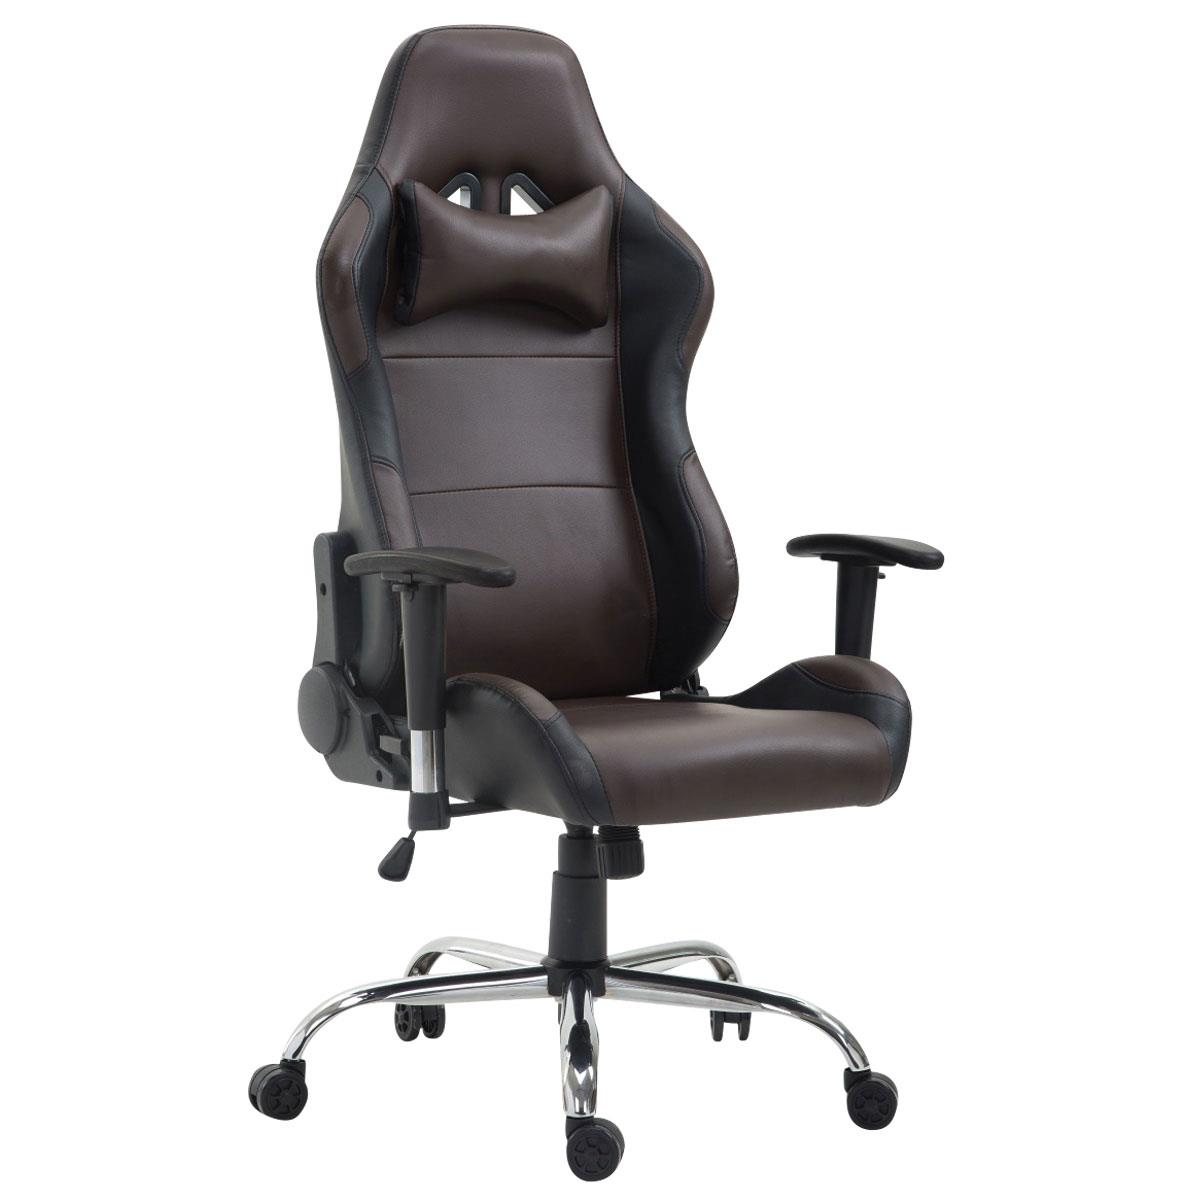 Gaming-Stuhl ROSBY. Sportliches Design und hoher Komfort, Lederbezug, Farbe Braun